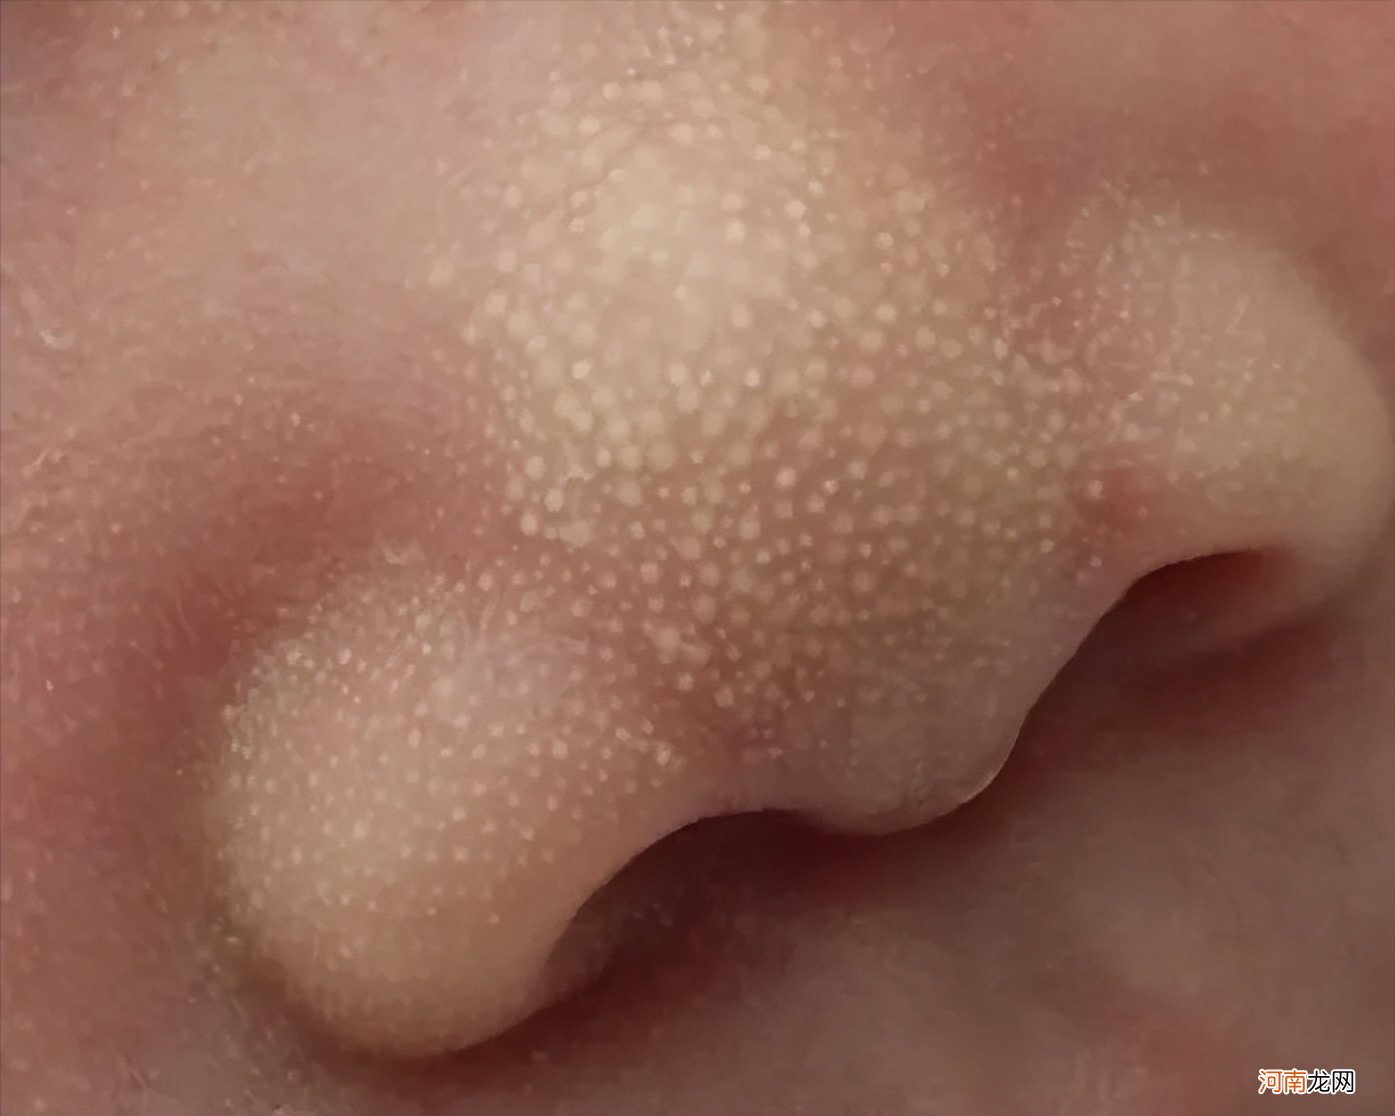 宝宝皮肤红红的，是过敏吗？带了6个孩子总结5个关于湿疹的经验